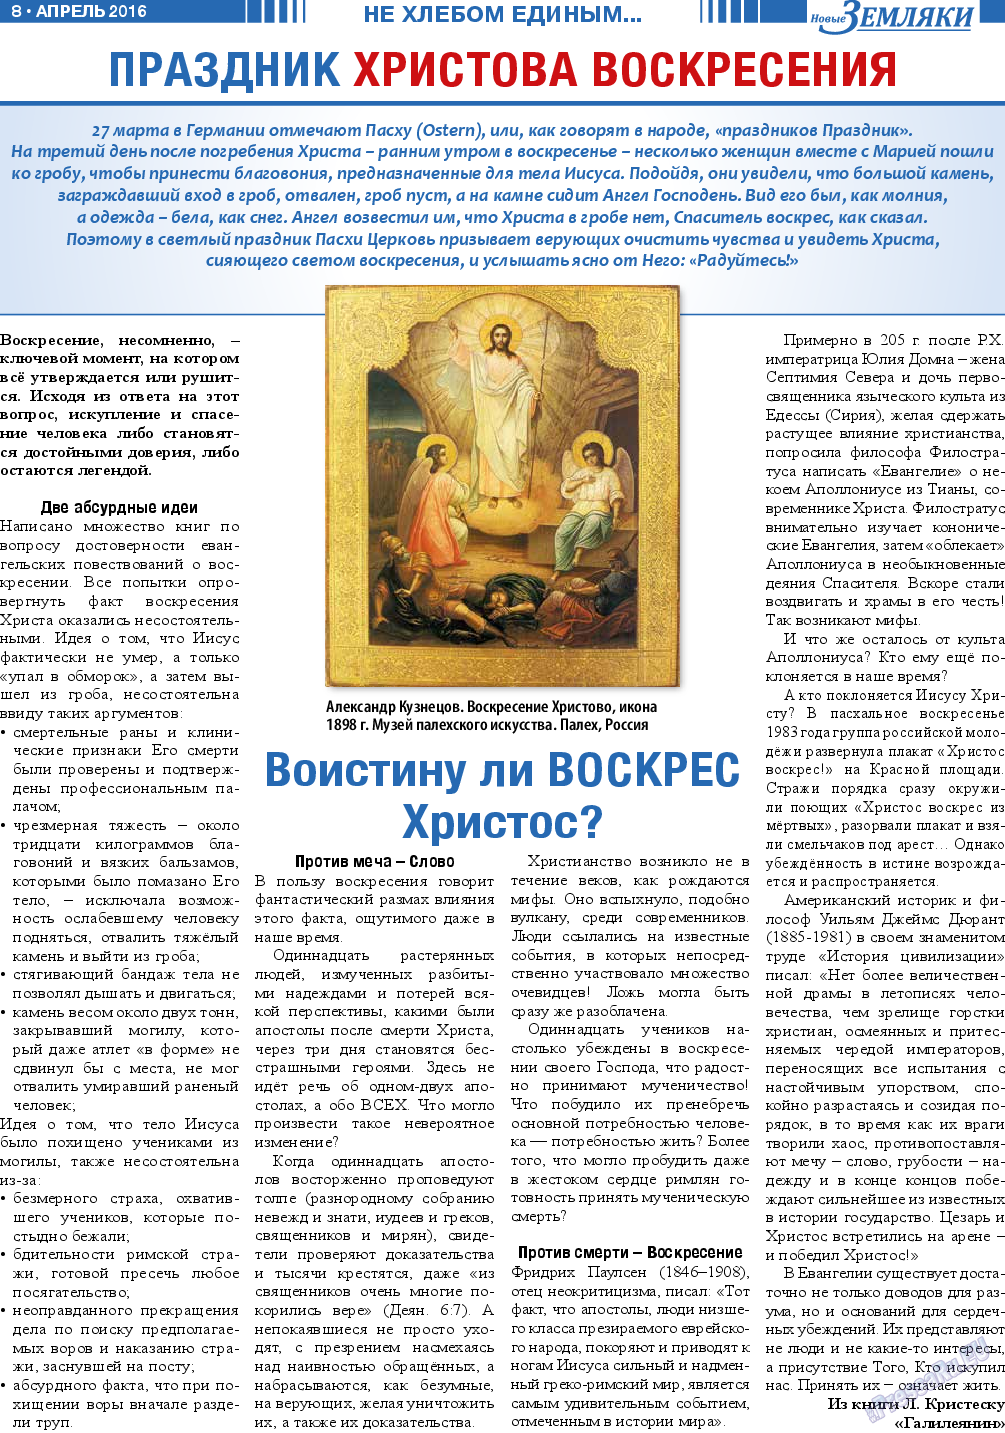 Новые Земляки, газета. 2016 №4 стр.8